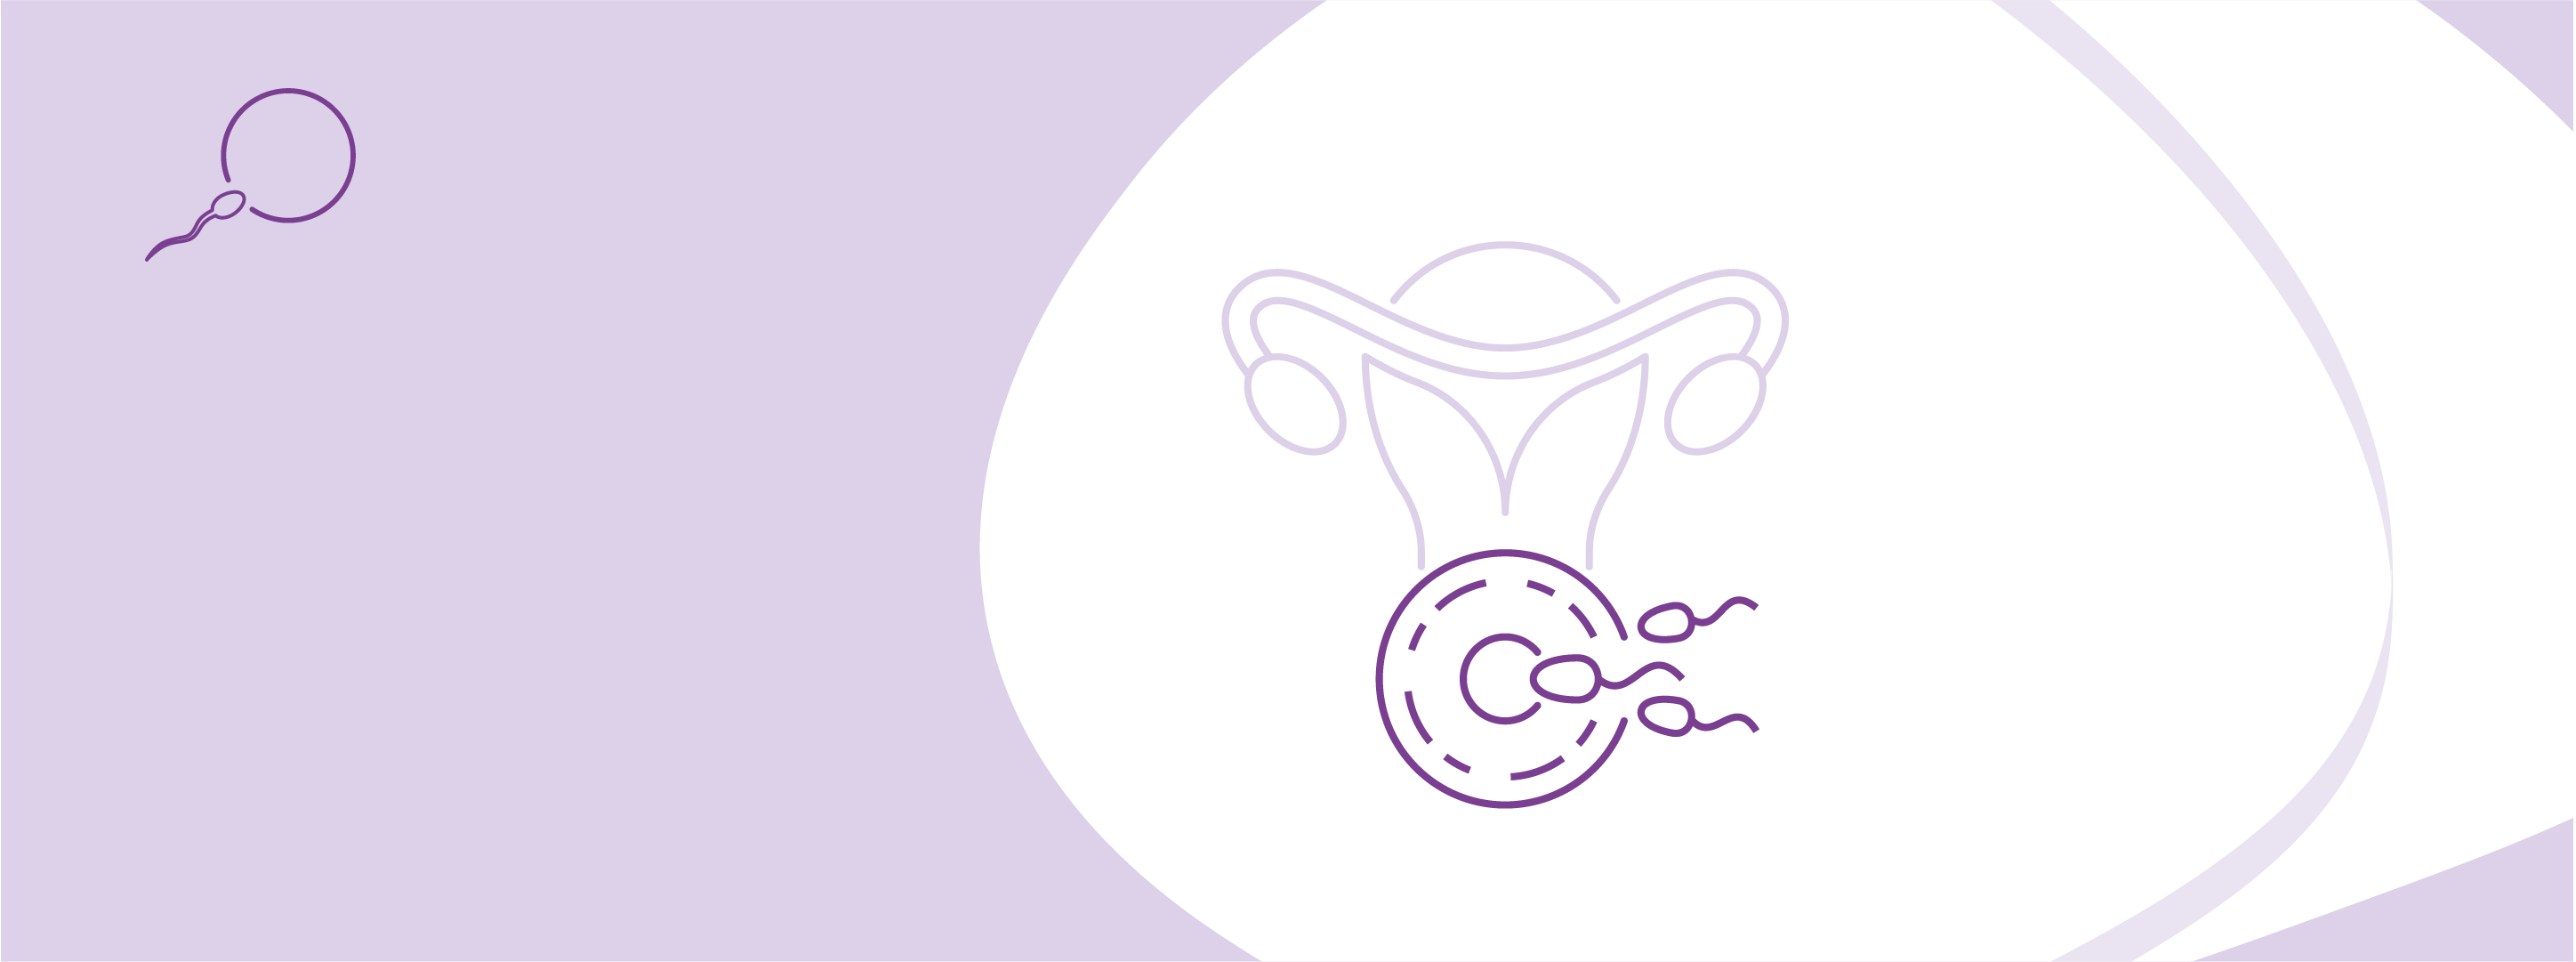 Програма ЕКЗ із використанням кріоконсервованих ембріонів (Кріоцикл)